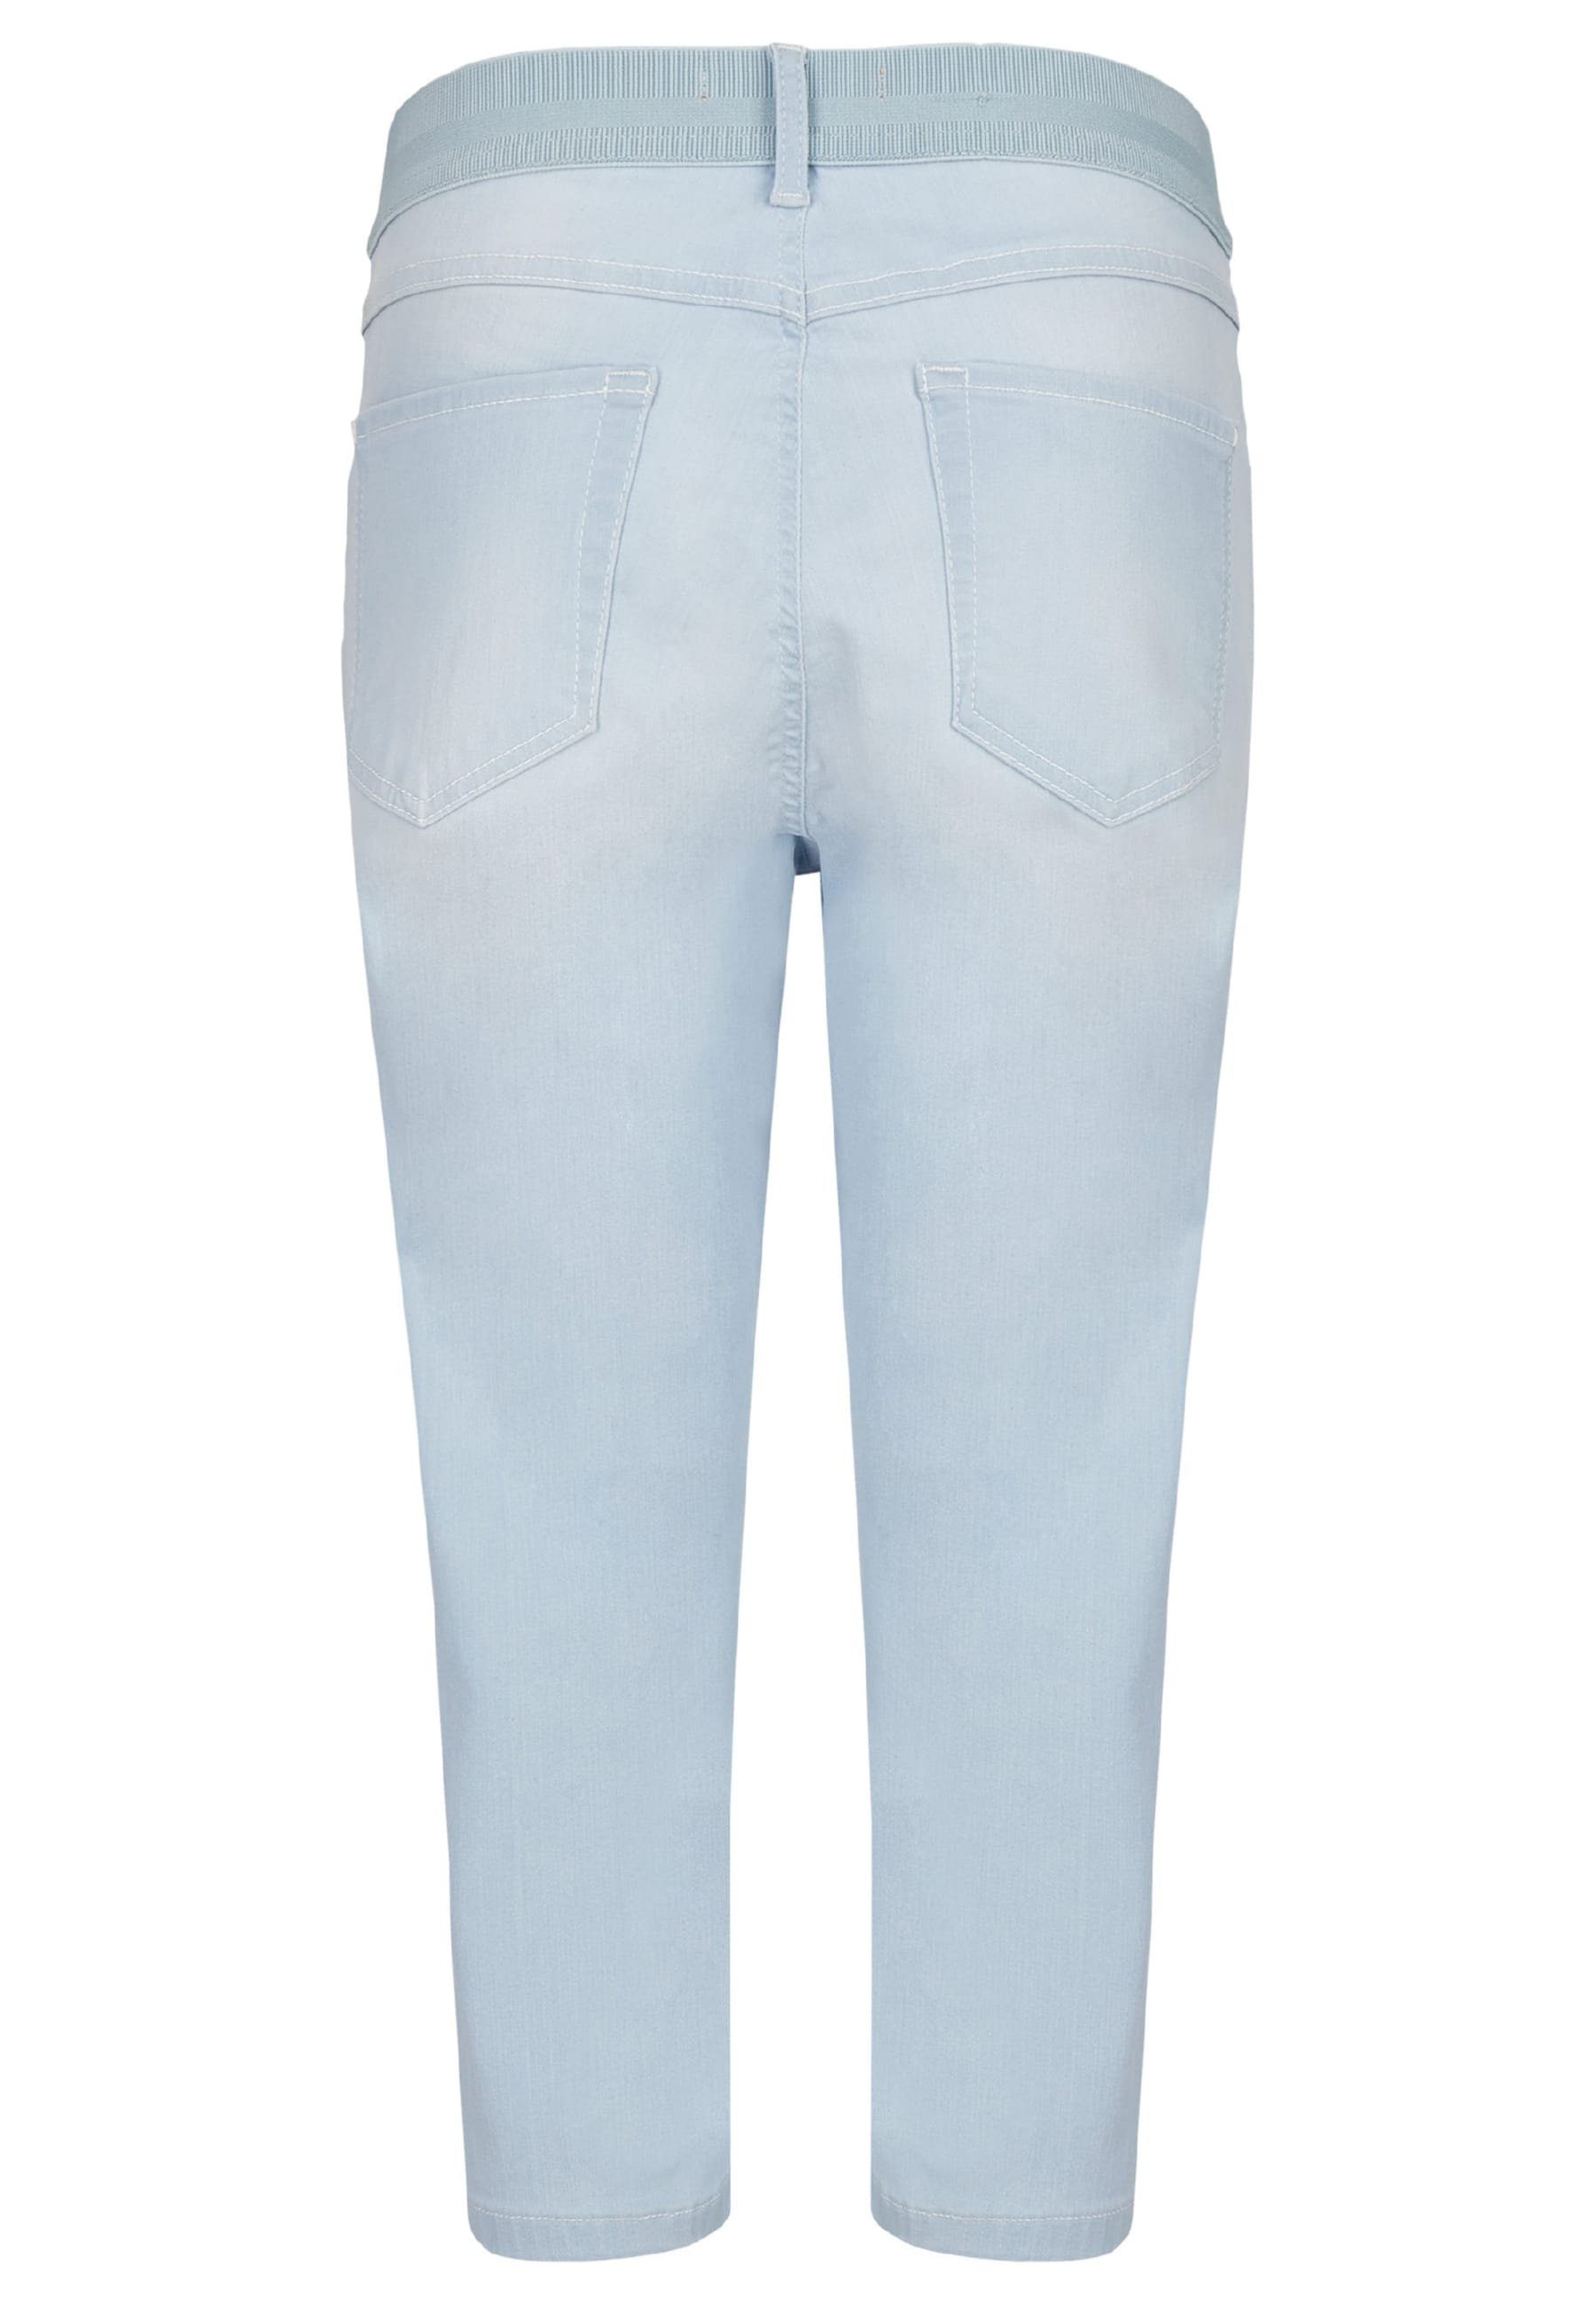 Capri Onesize mit Kurze Jeans ANGELS hellblau Dehnbund-Jeans klassischem Design